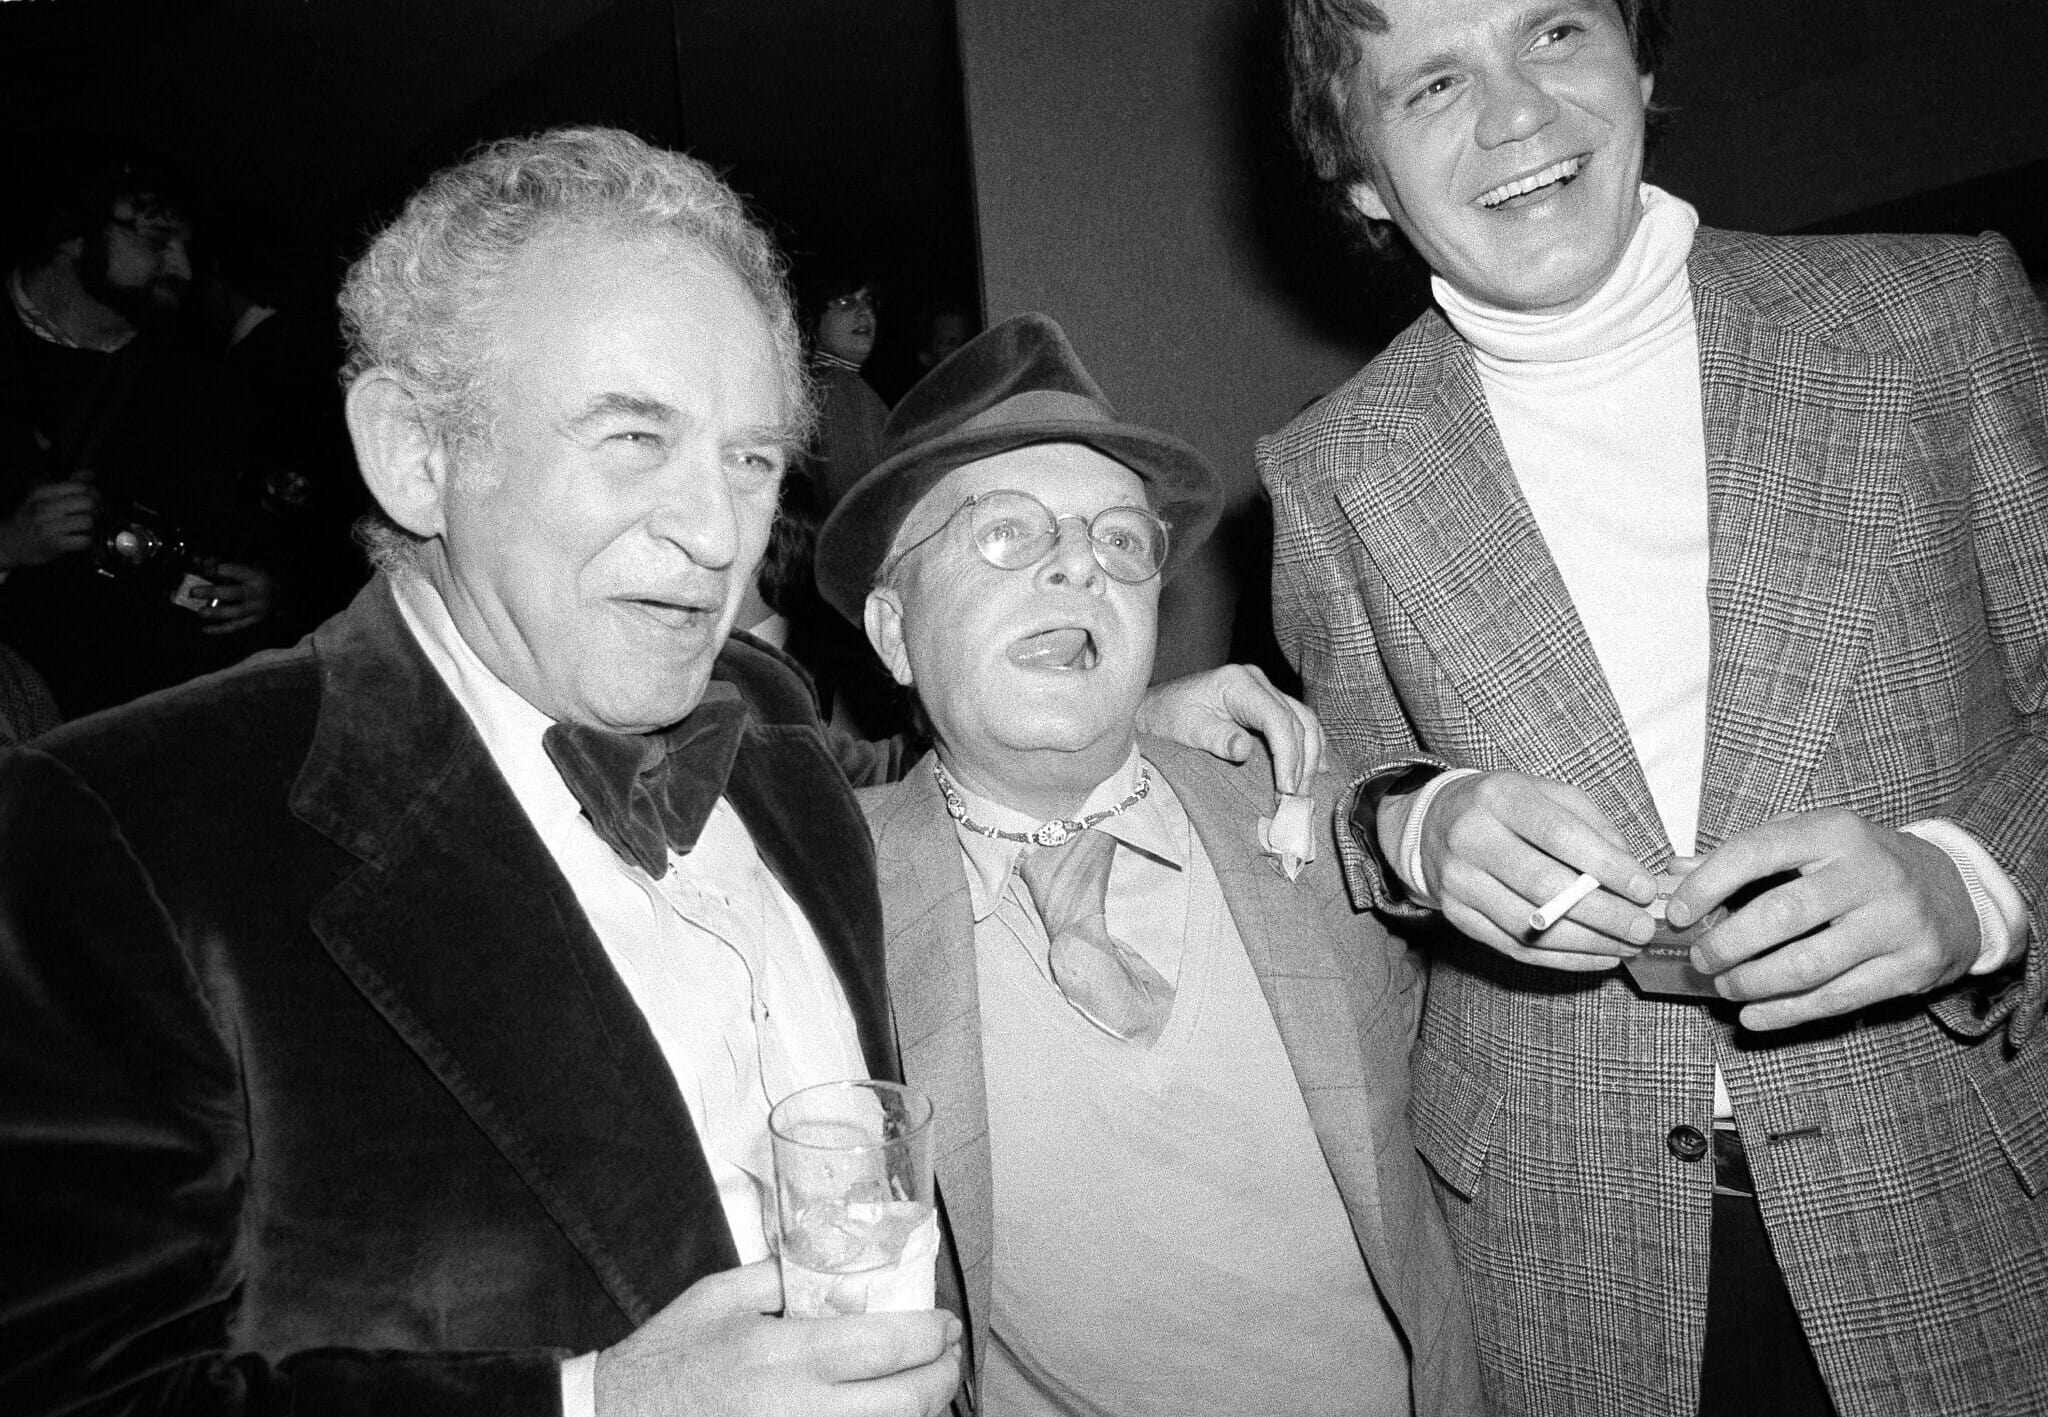 הסופרים נורמן מיילר וטרומן קפוטה במסיבה ספרותית של רנדום האוס בניו יורק, 21 במרץ 1978 (צילום: AP Photo/Ron Frehm)